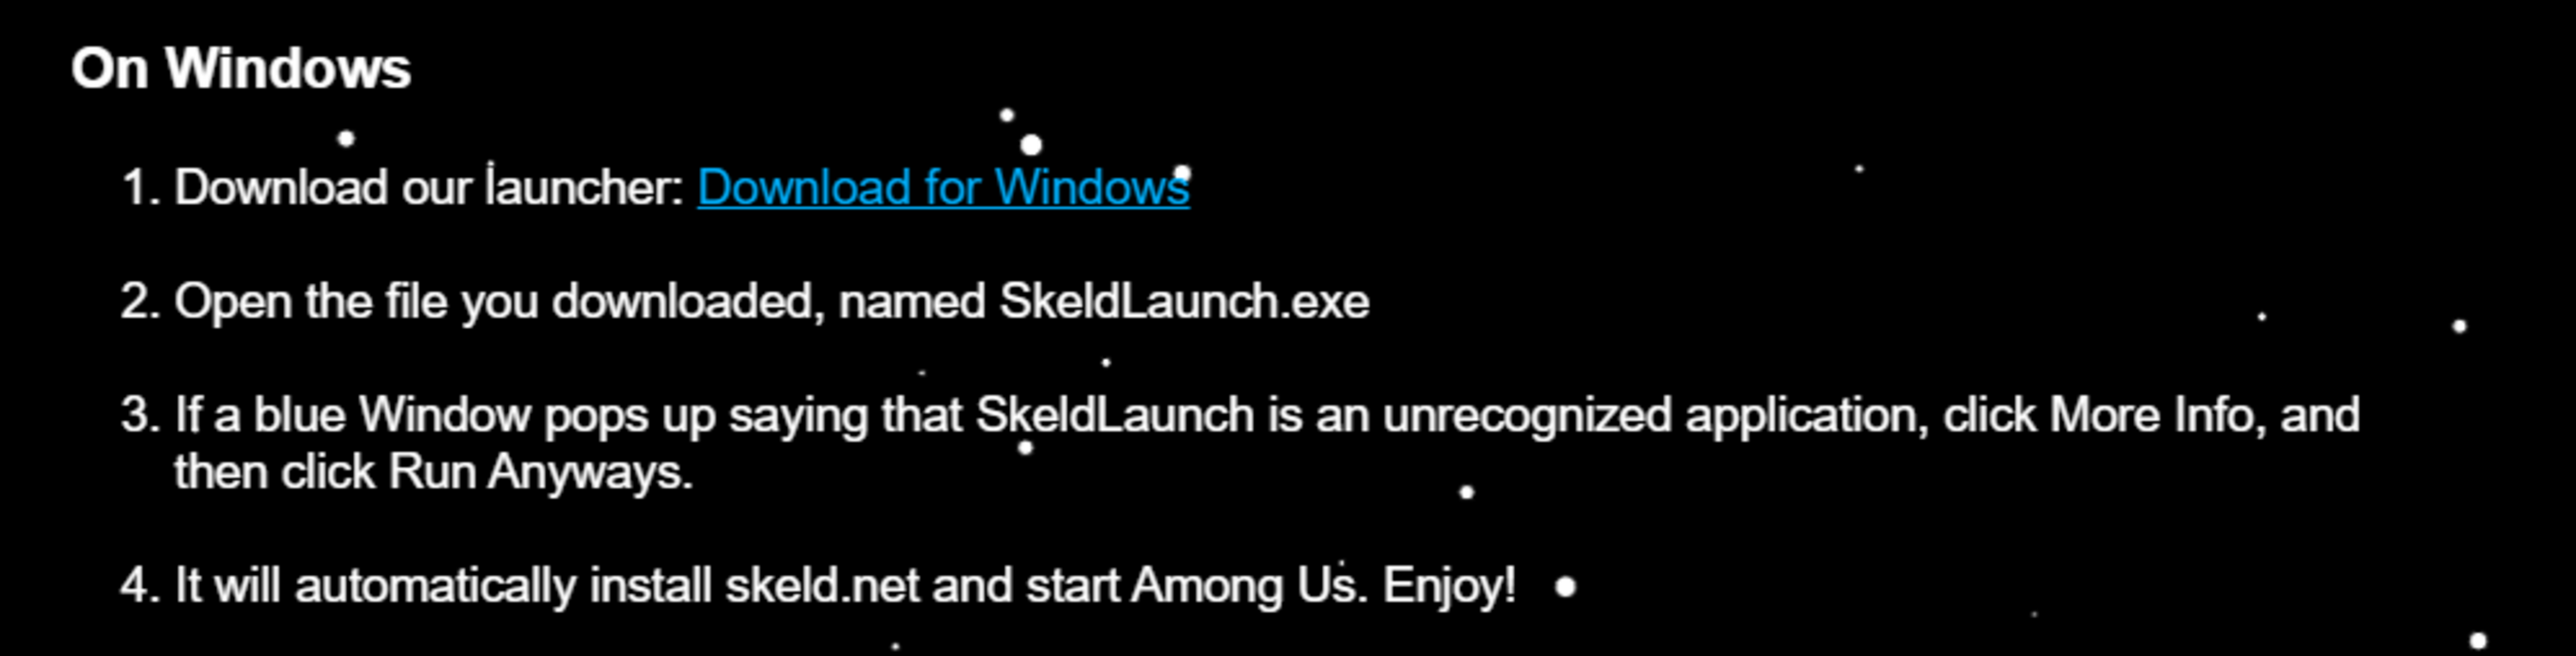 Skeld.net 1.1 for Windows Screenshot 1